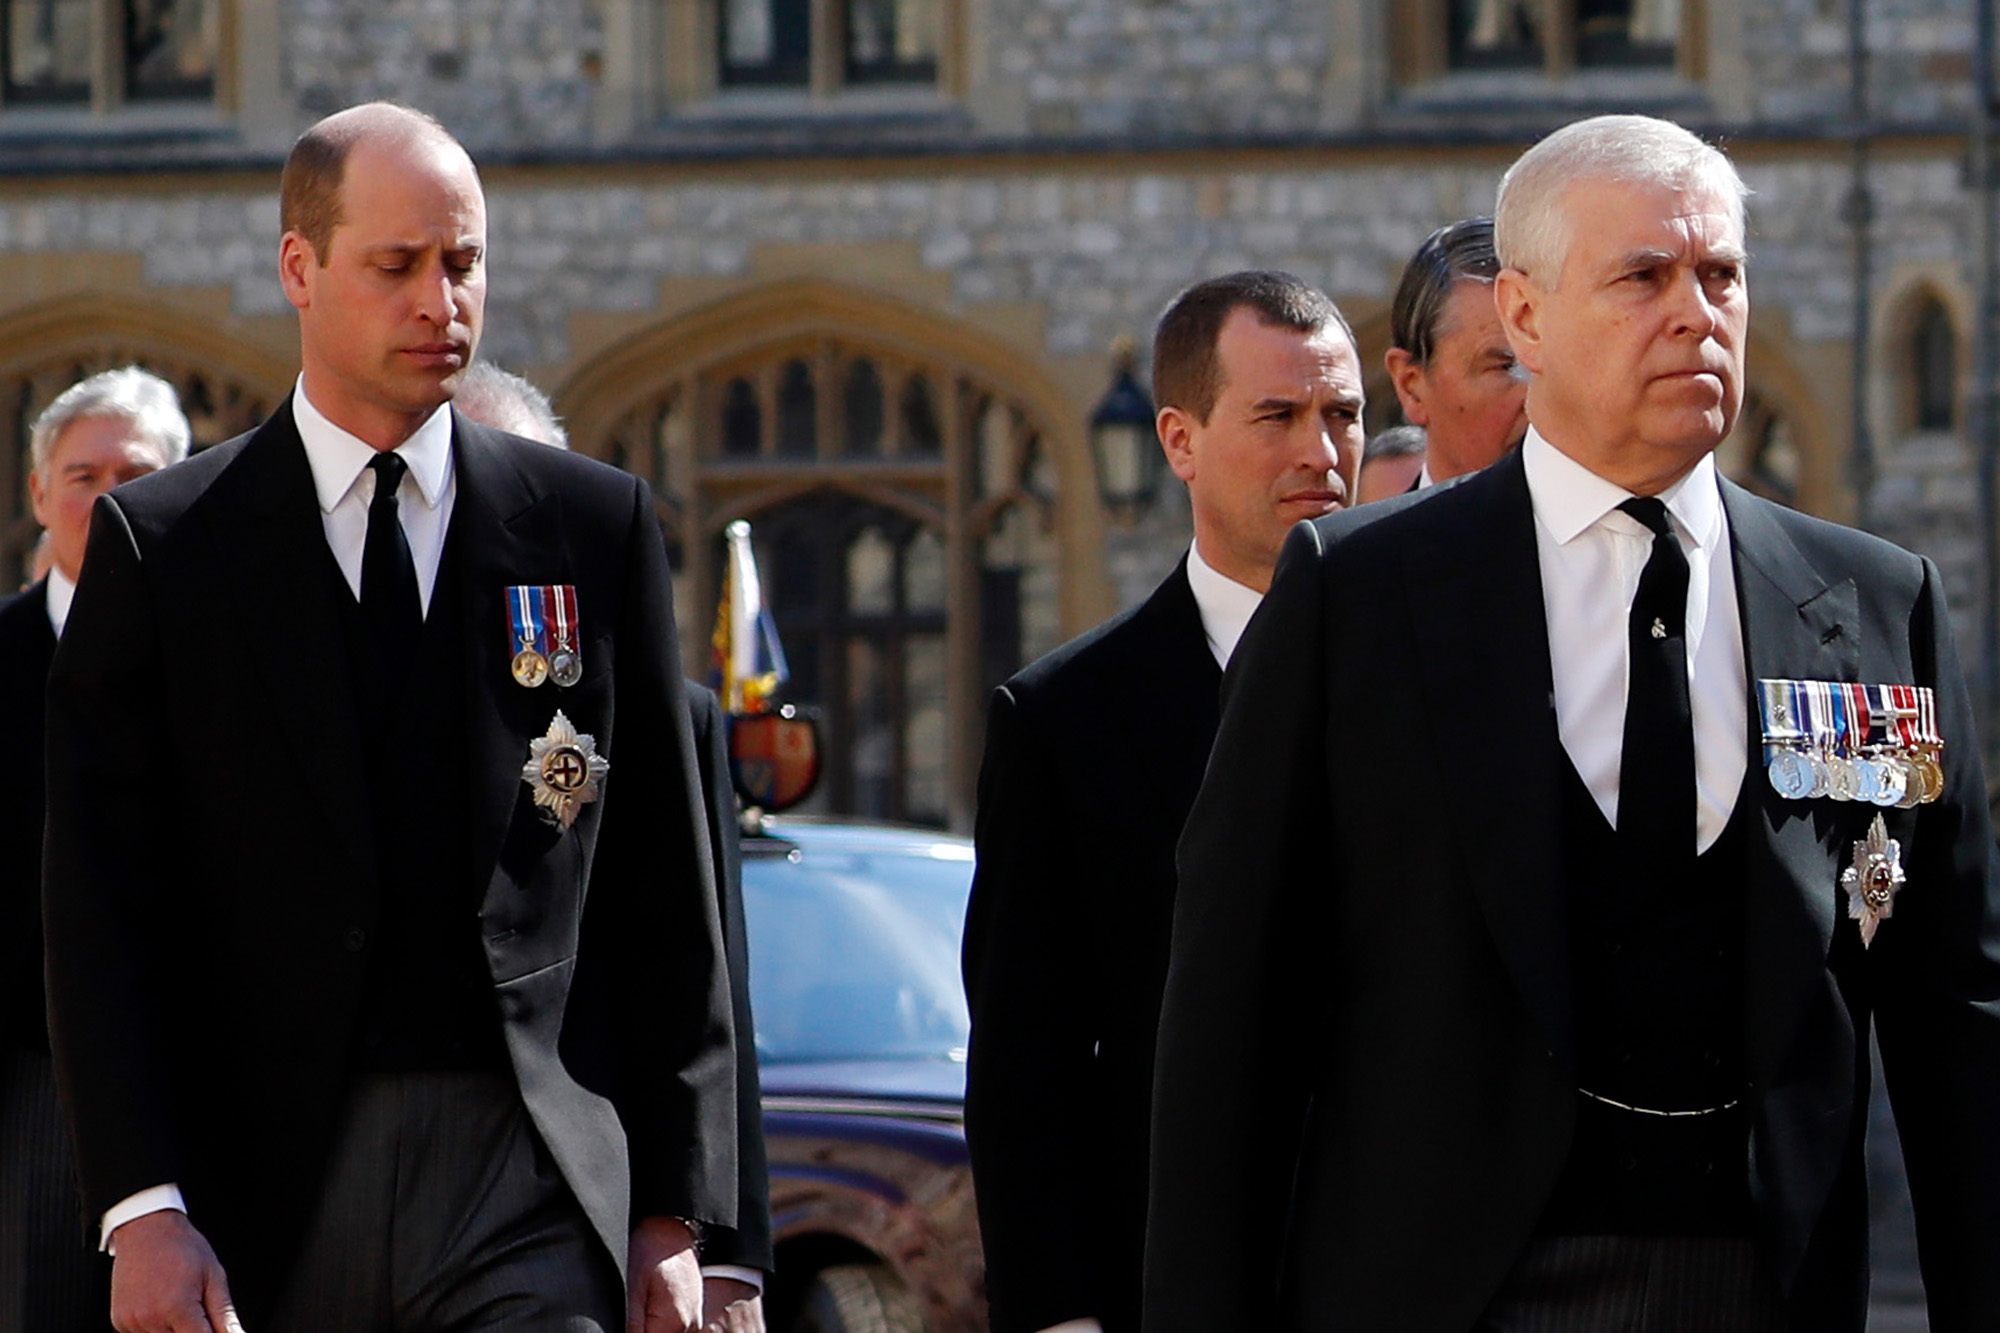 Le prince William mal à l'aise à cause du prince Andrew : Une vidéo embarrassante dévoilée